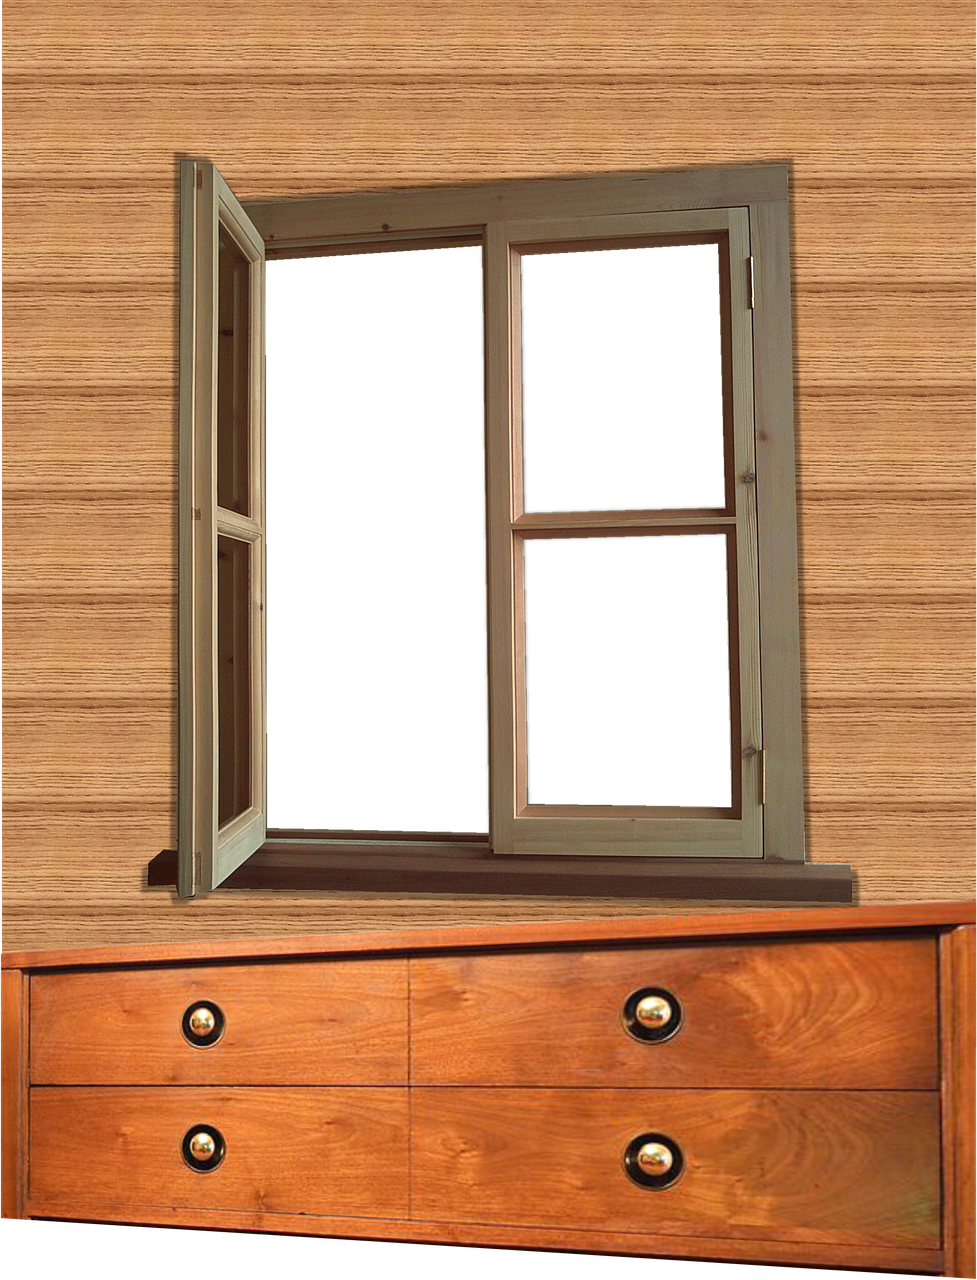 window opening wall free photo